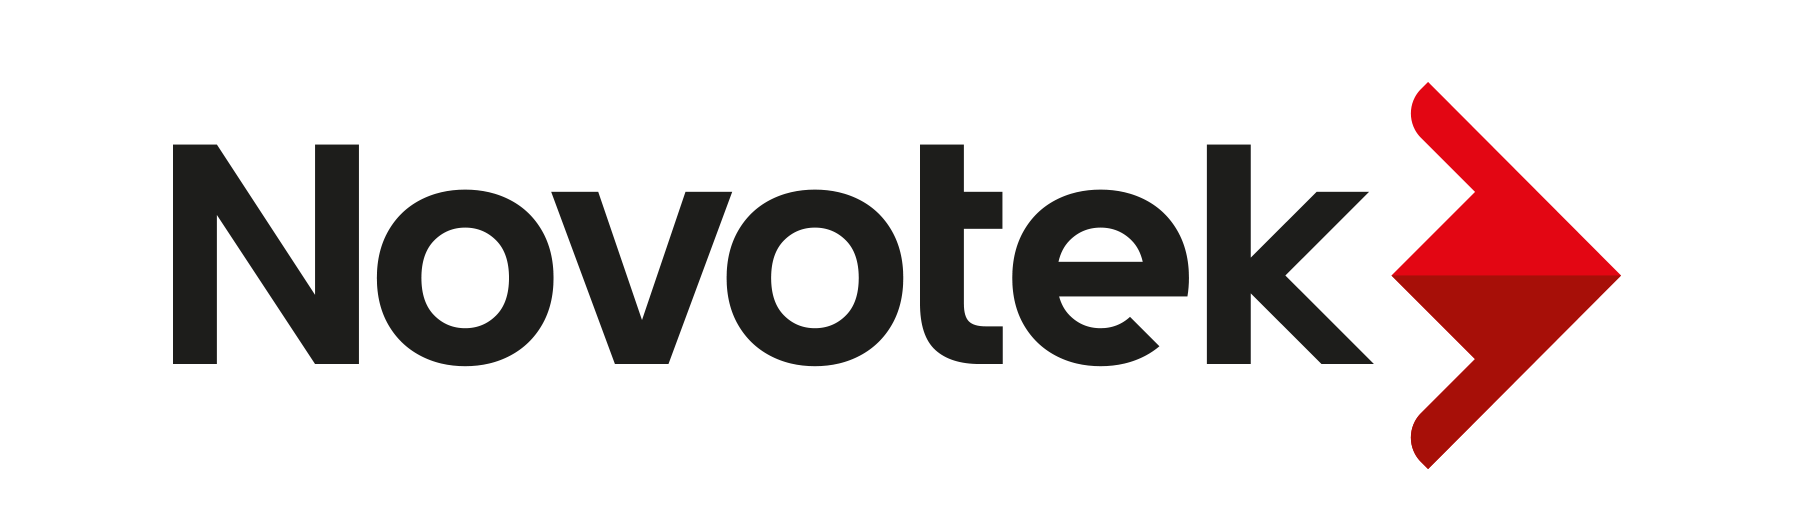 Novotek logo